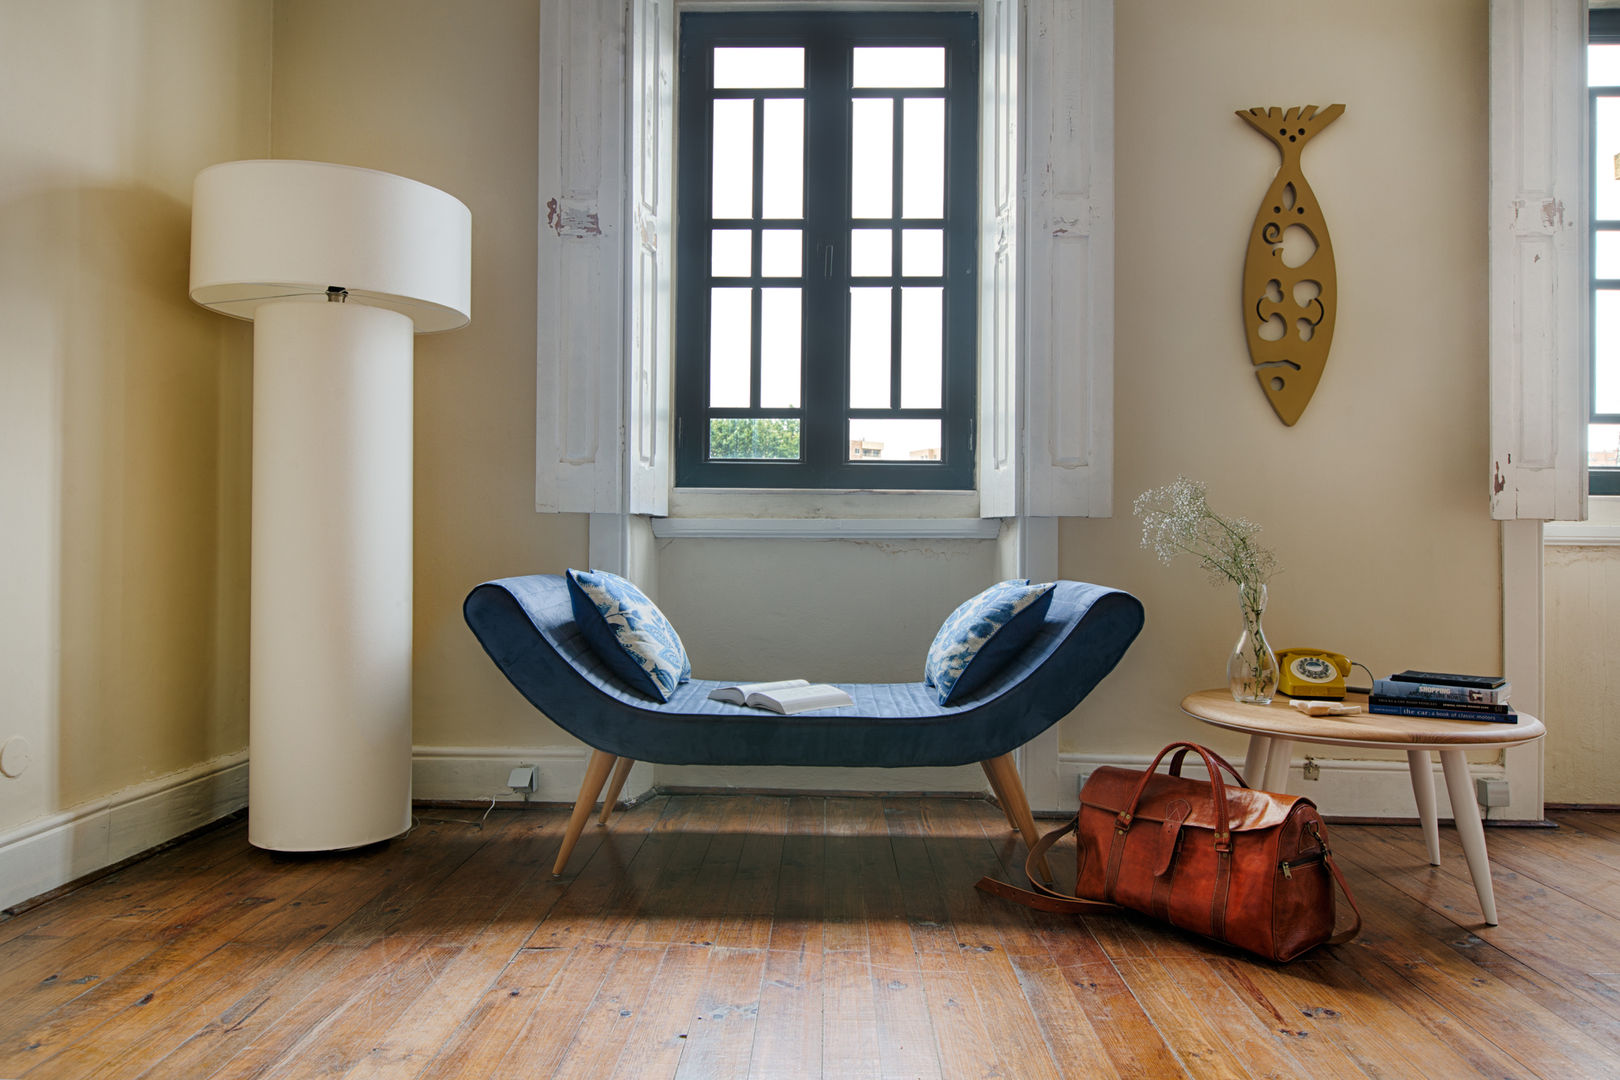 Coleção LOLOCA, Loloca Design Loloca Design Eclectic style living room Sofas & armchairs